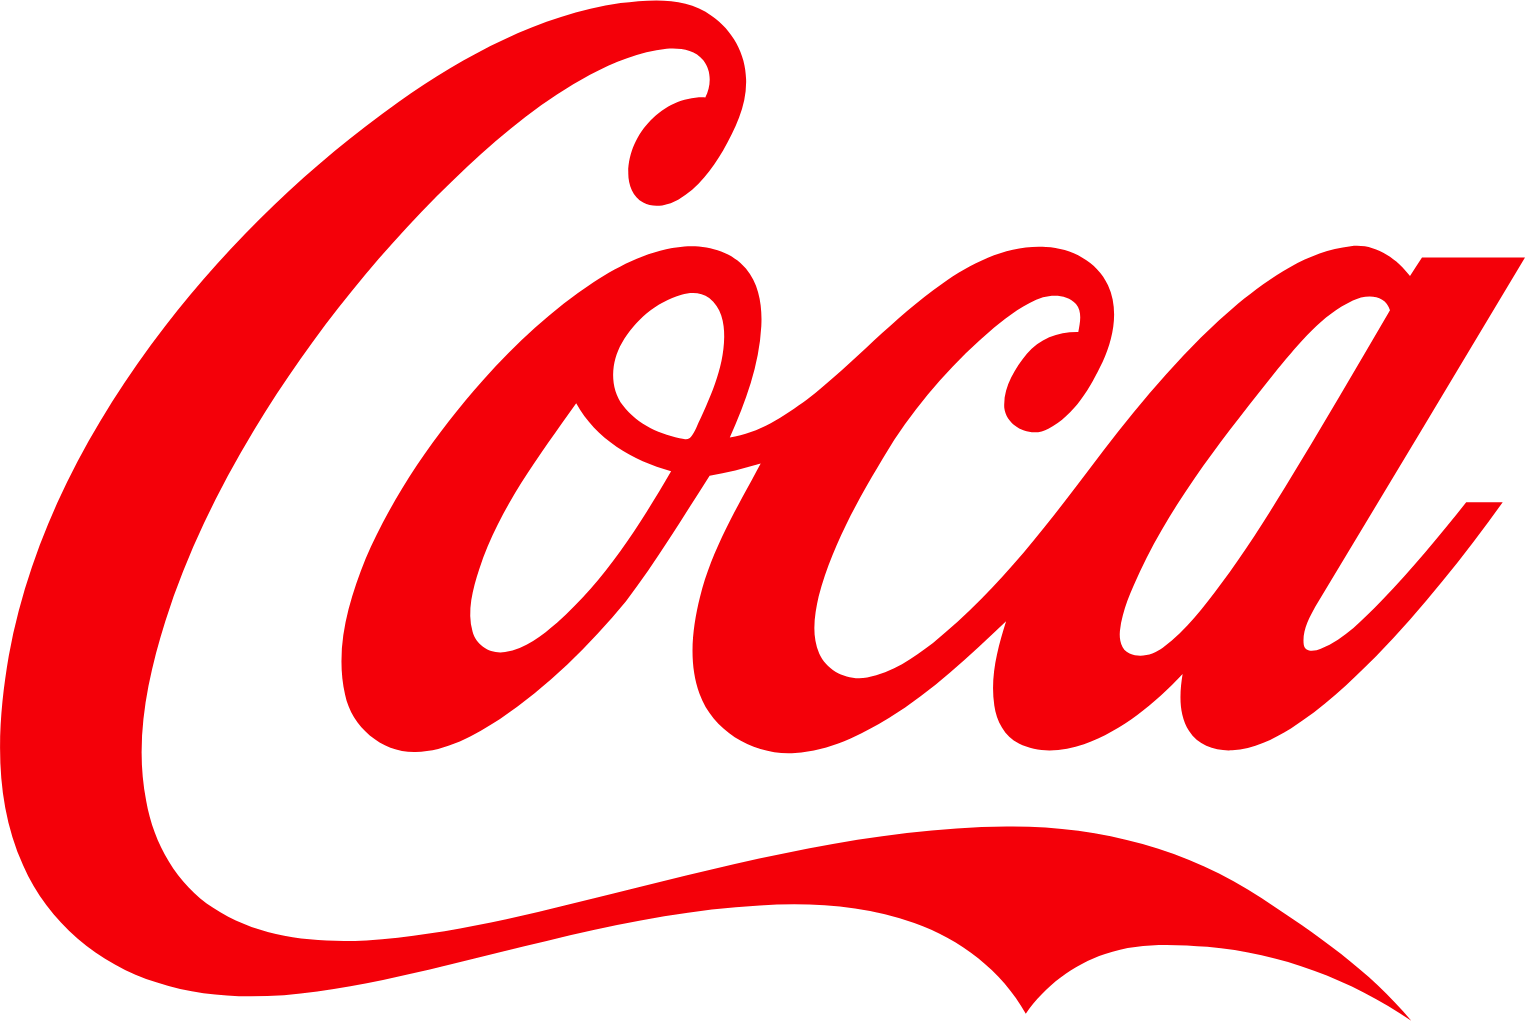 Coca Cola Logo Png - Clip Art Library